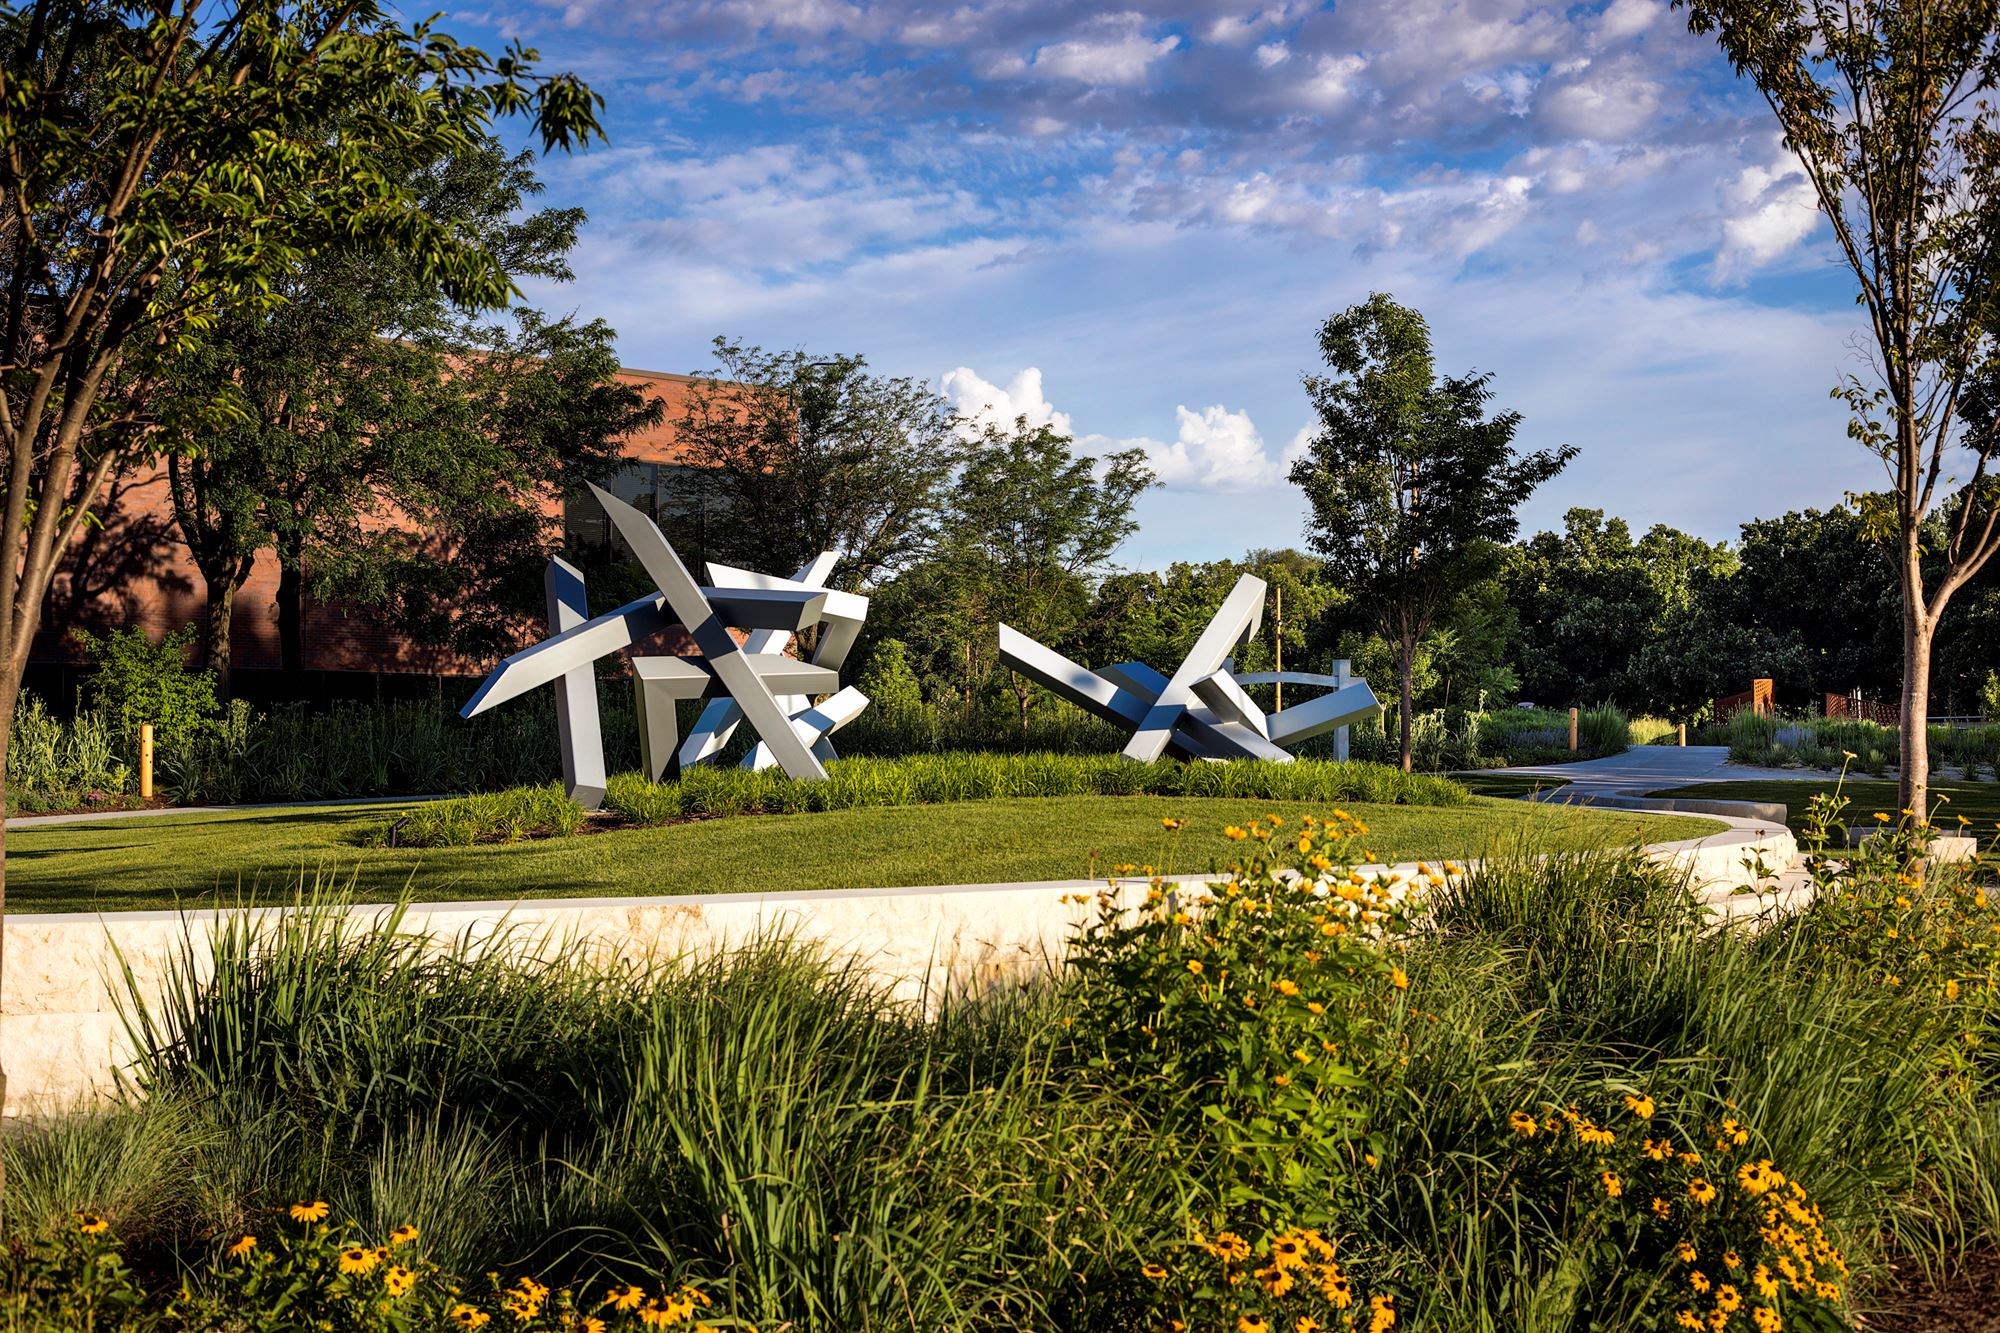 Wichita Art Museum Art Garden